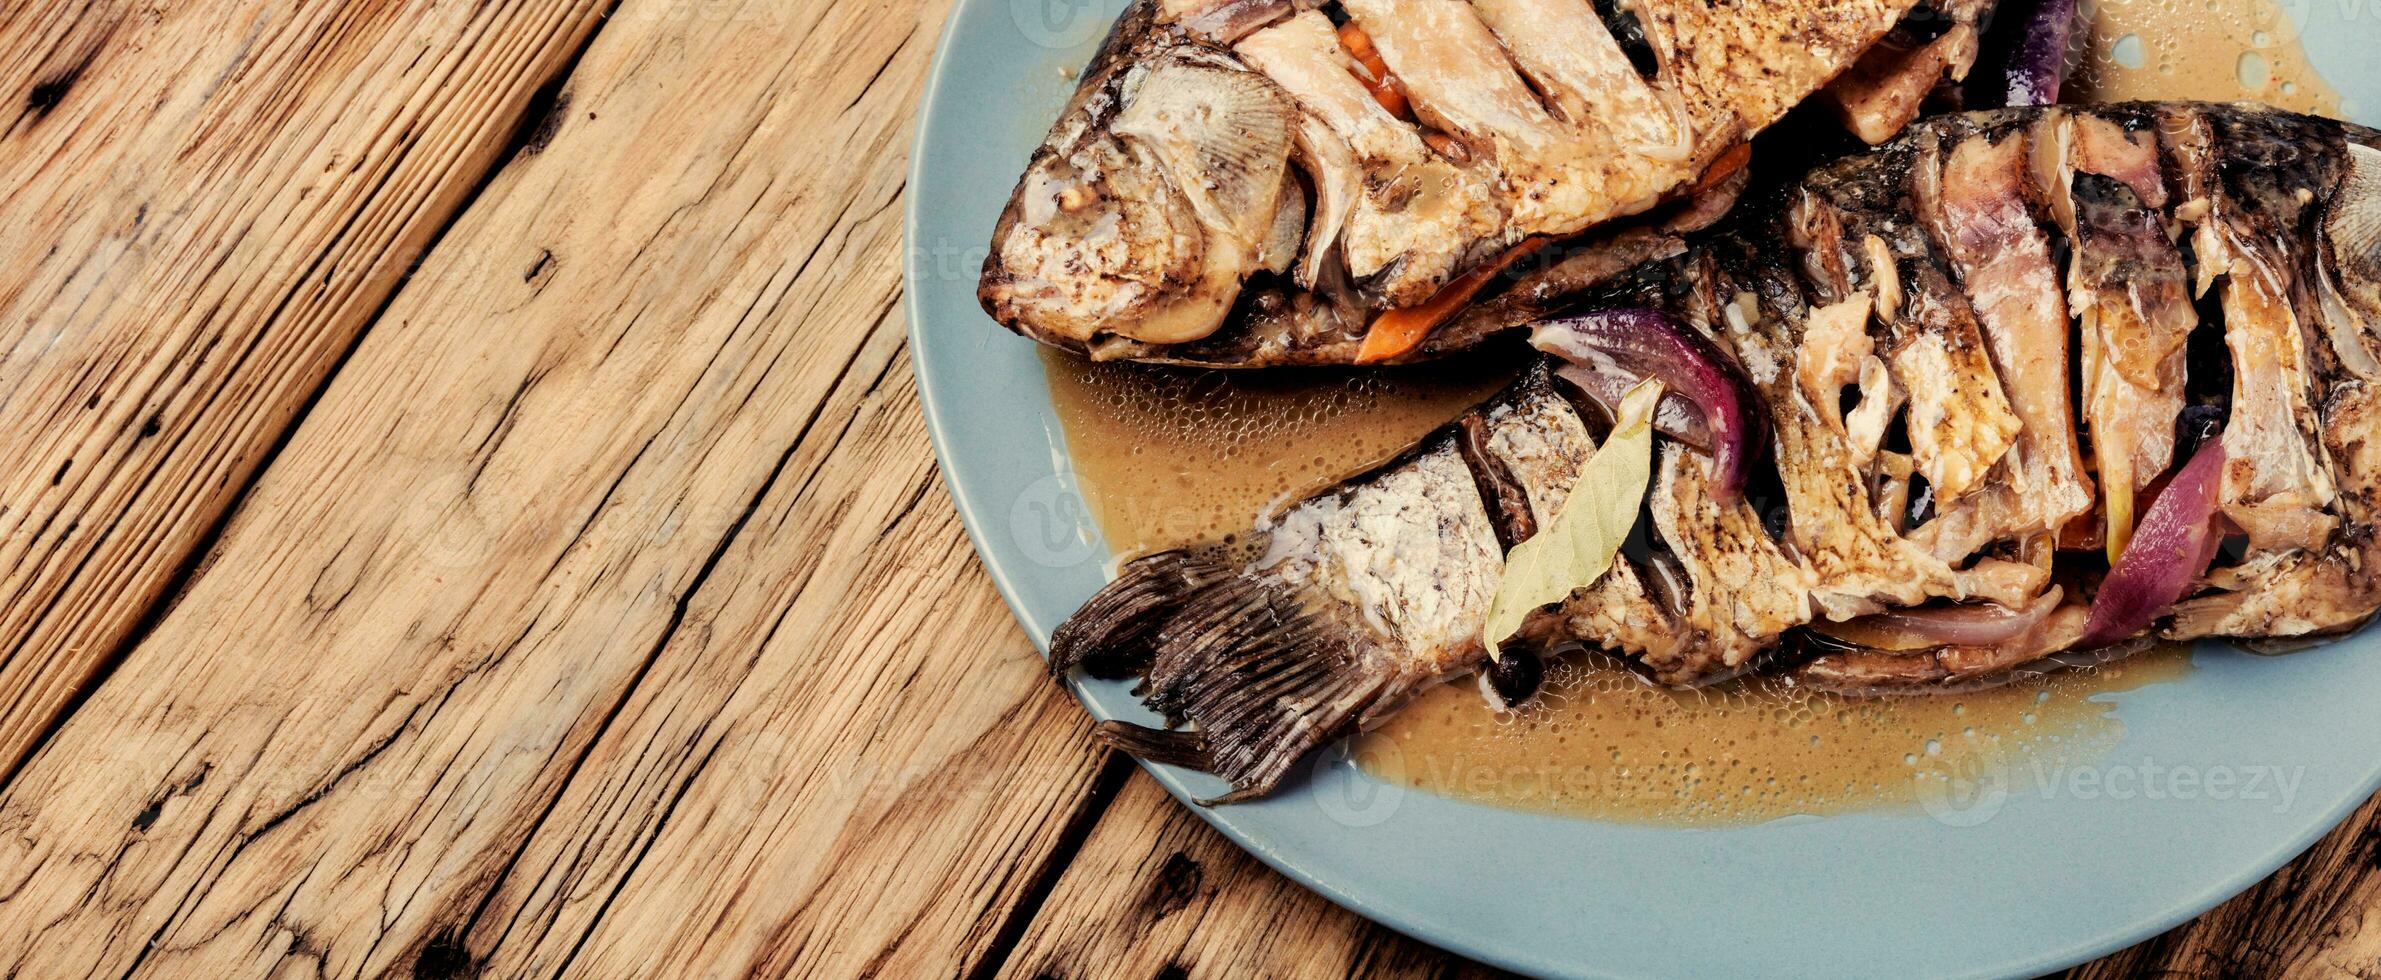 lecker gebacken Fisch auf Teller foto